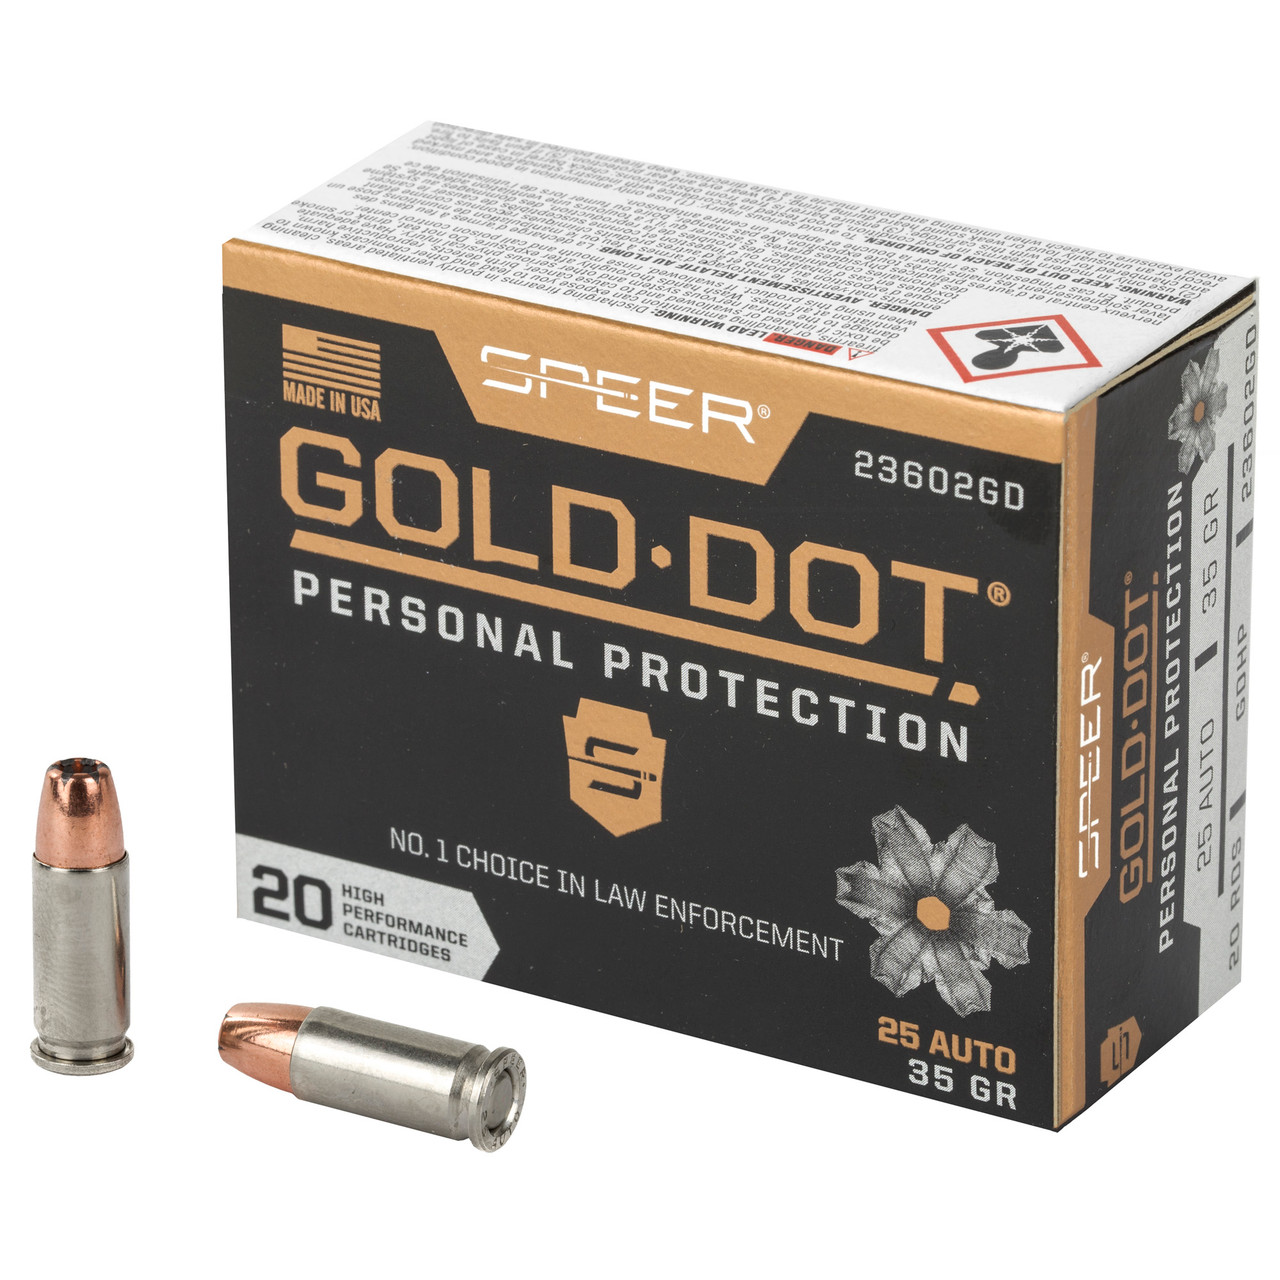 Speer Ammunition 23602GD Gold Dot 25acp 35gr Hp 20/200